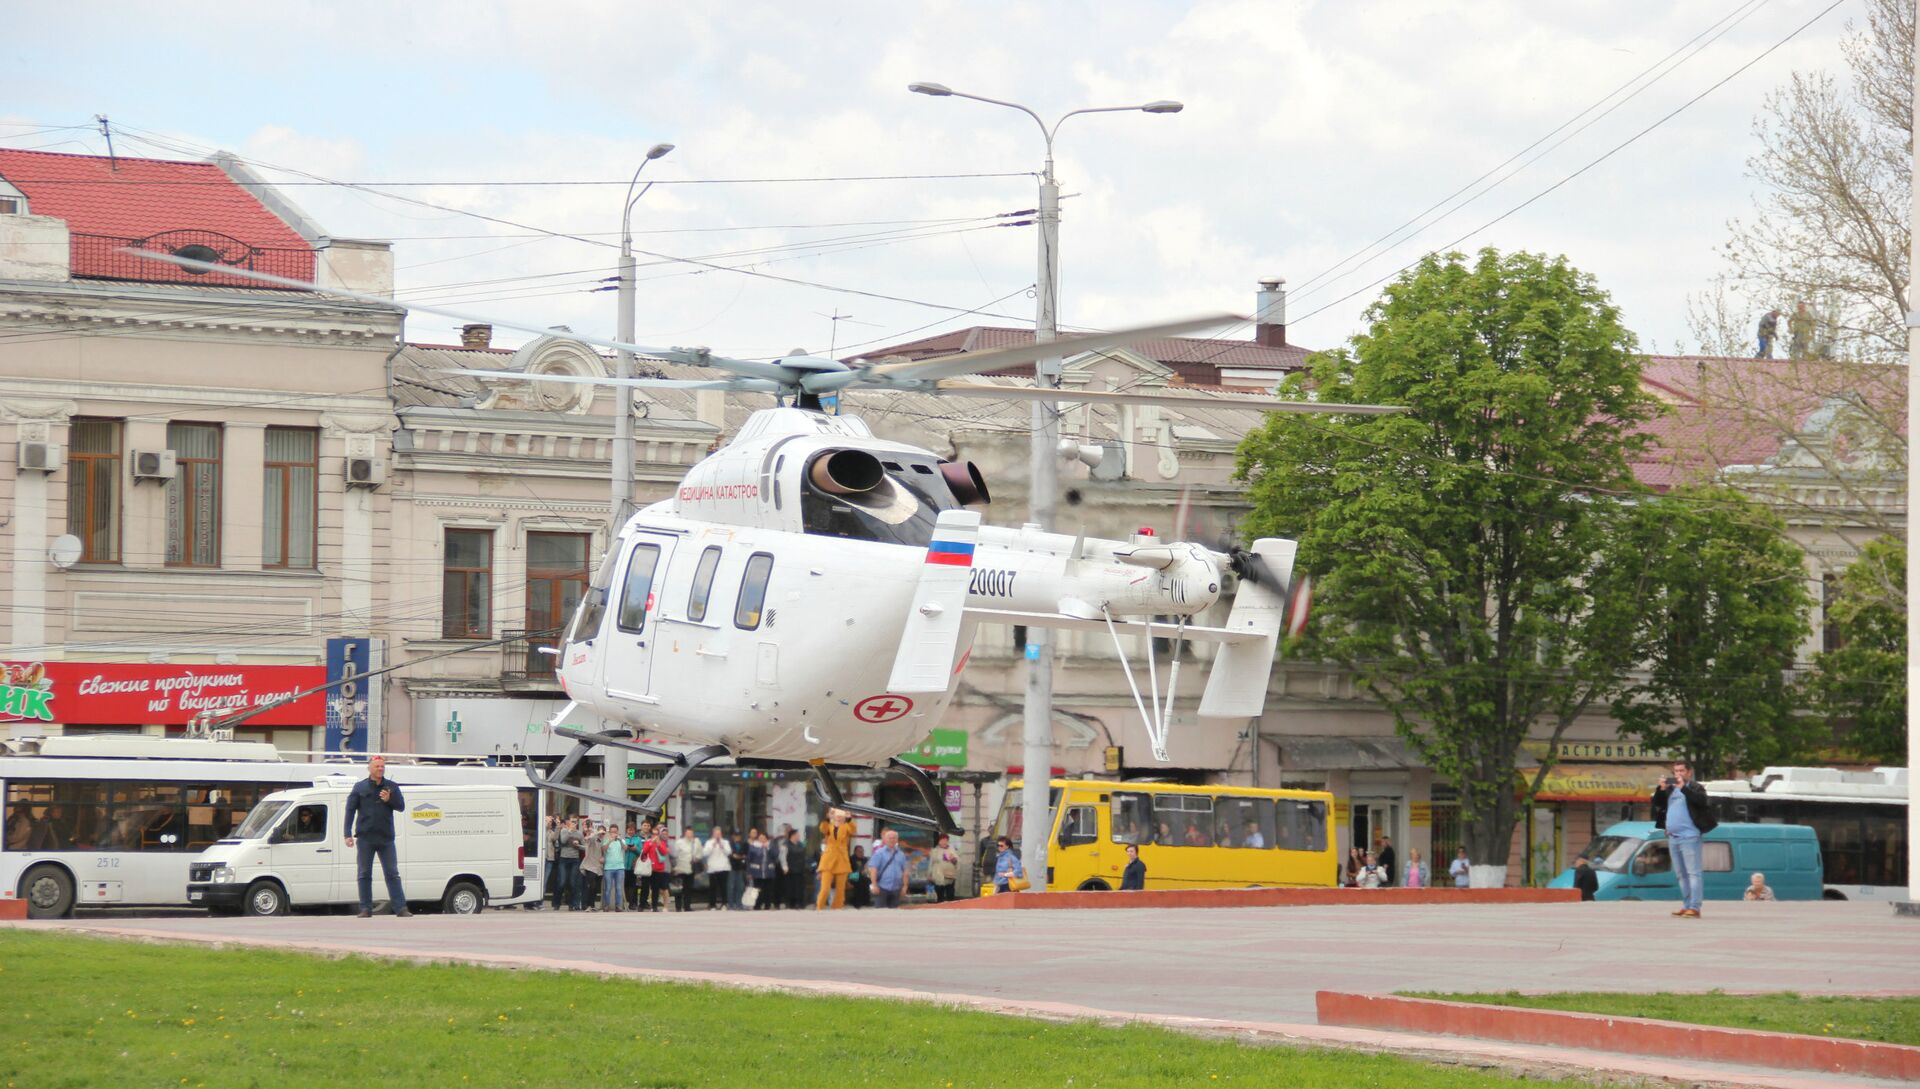 Видео: на центральную площадь Симферополя приземлился вертолет санавиации - РИА Новости, 1920, 19.04.2018